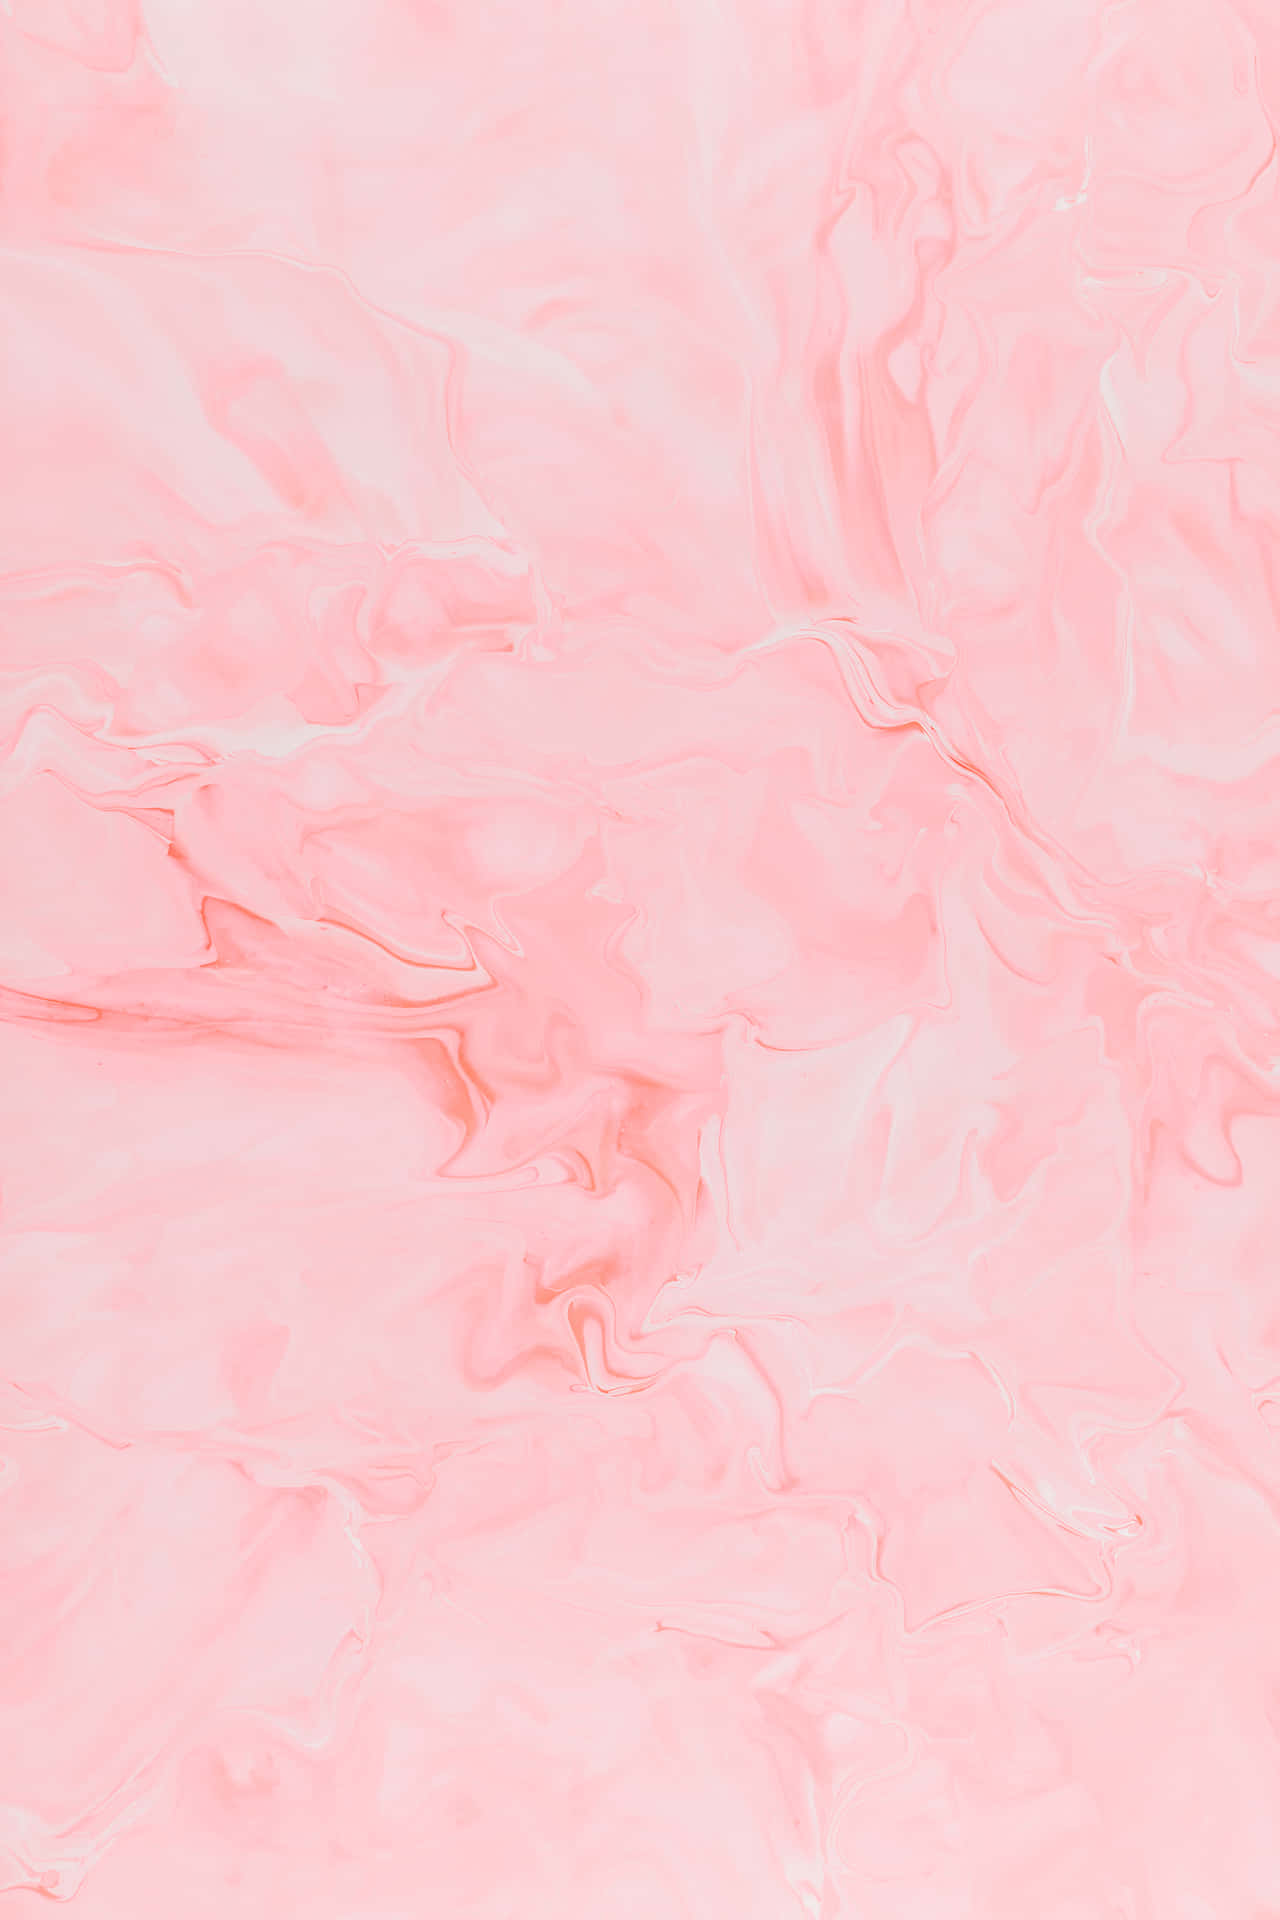 Ästhetischebaby Pink Vibes. Wallpaper